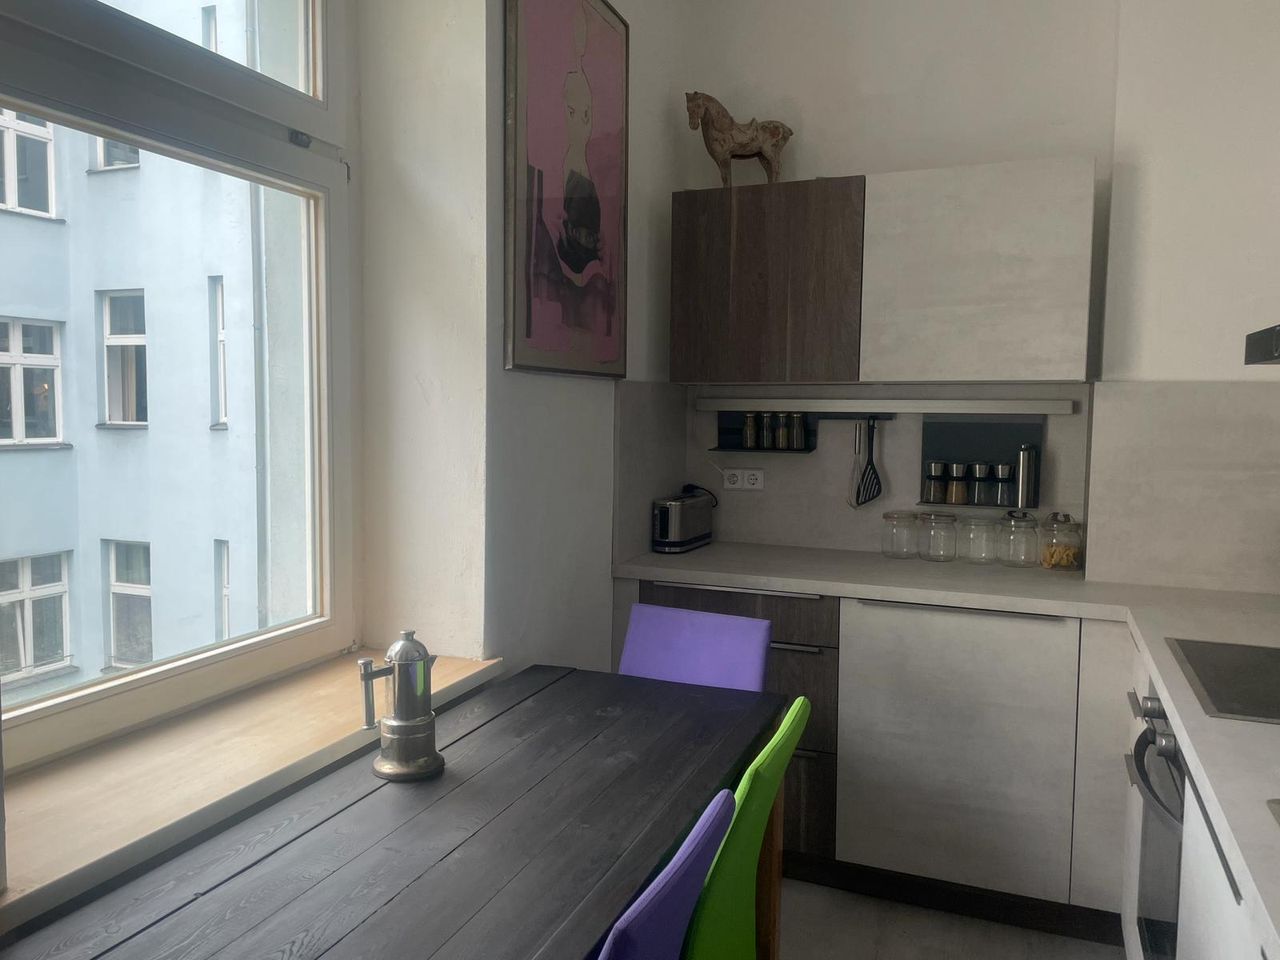 132 | 1 bedroom apartment in hip Prenzlauer Berg district